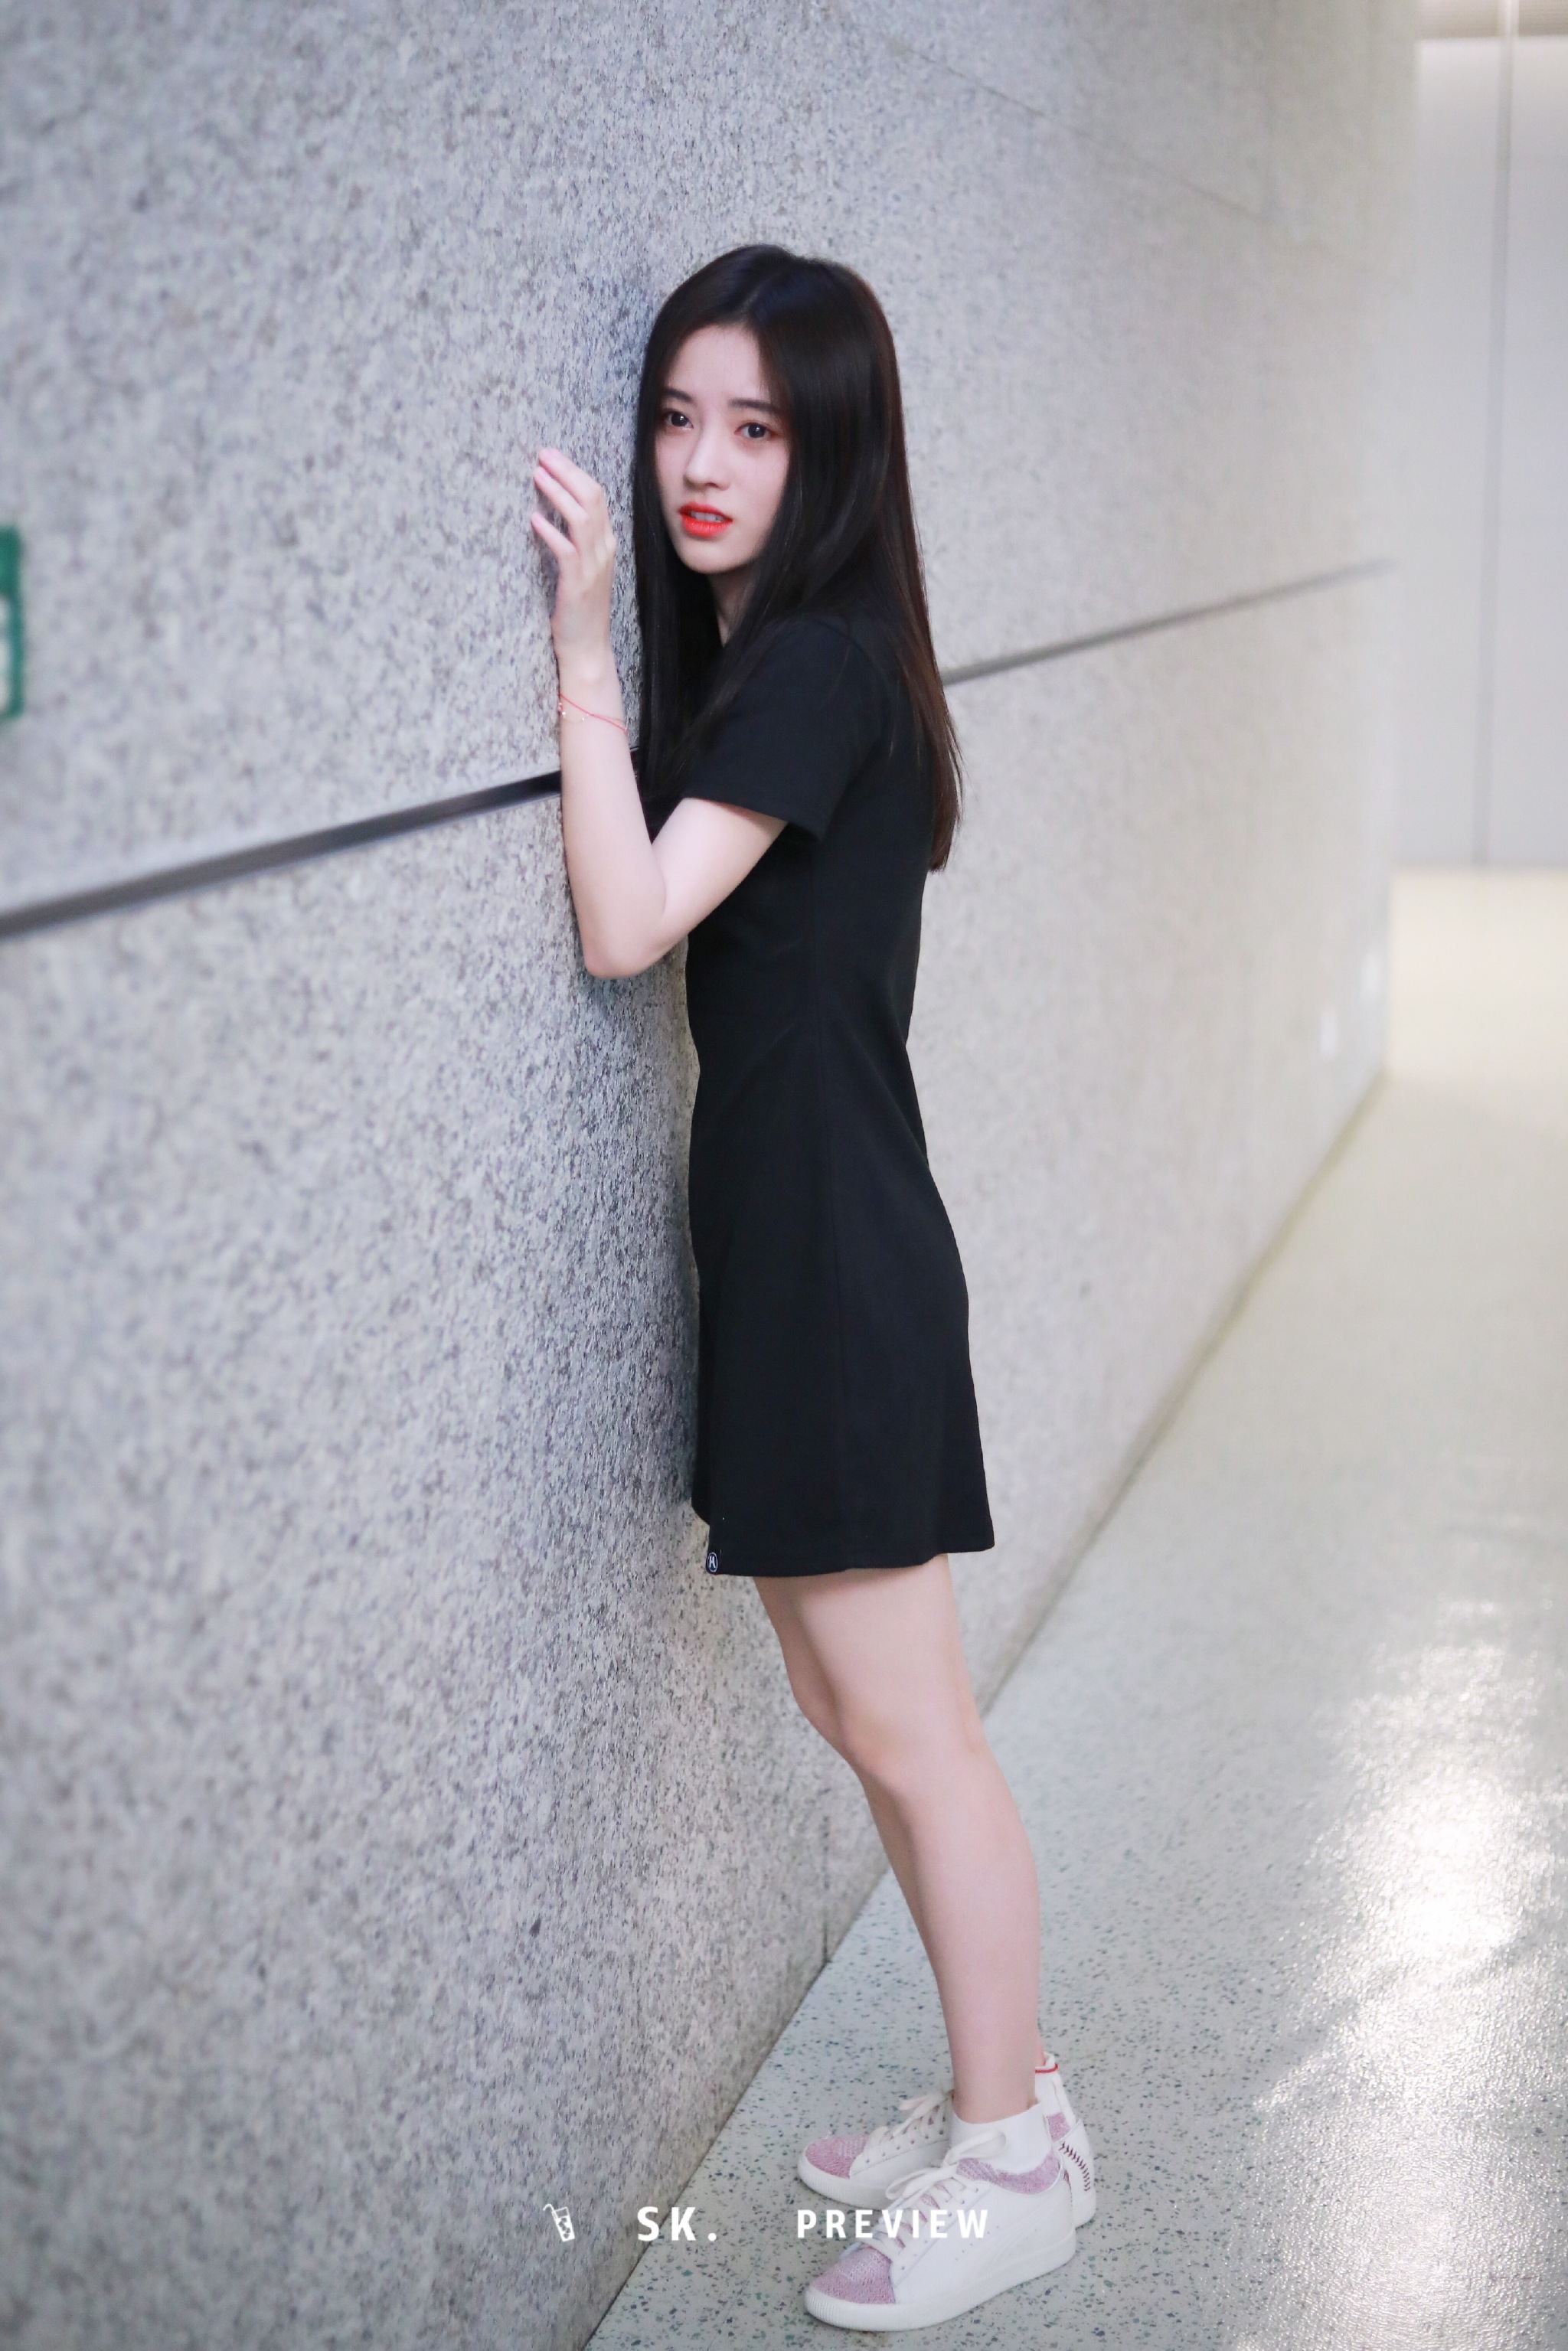 鞠婧祎今日现身上海机场,身着t恤款小黑裙,搭配连袜小白鞋